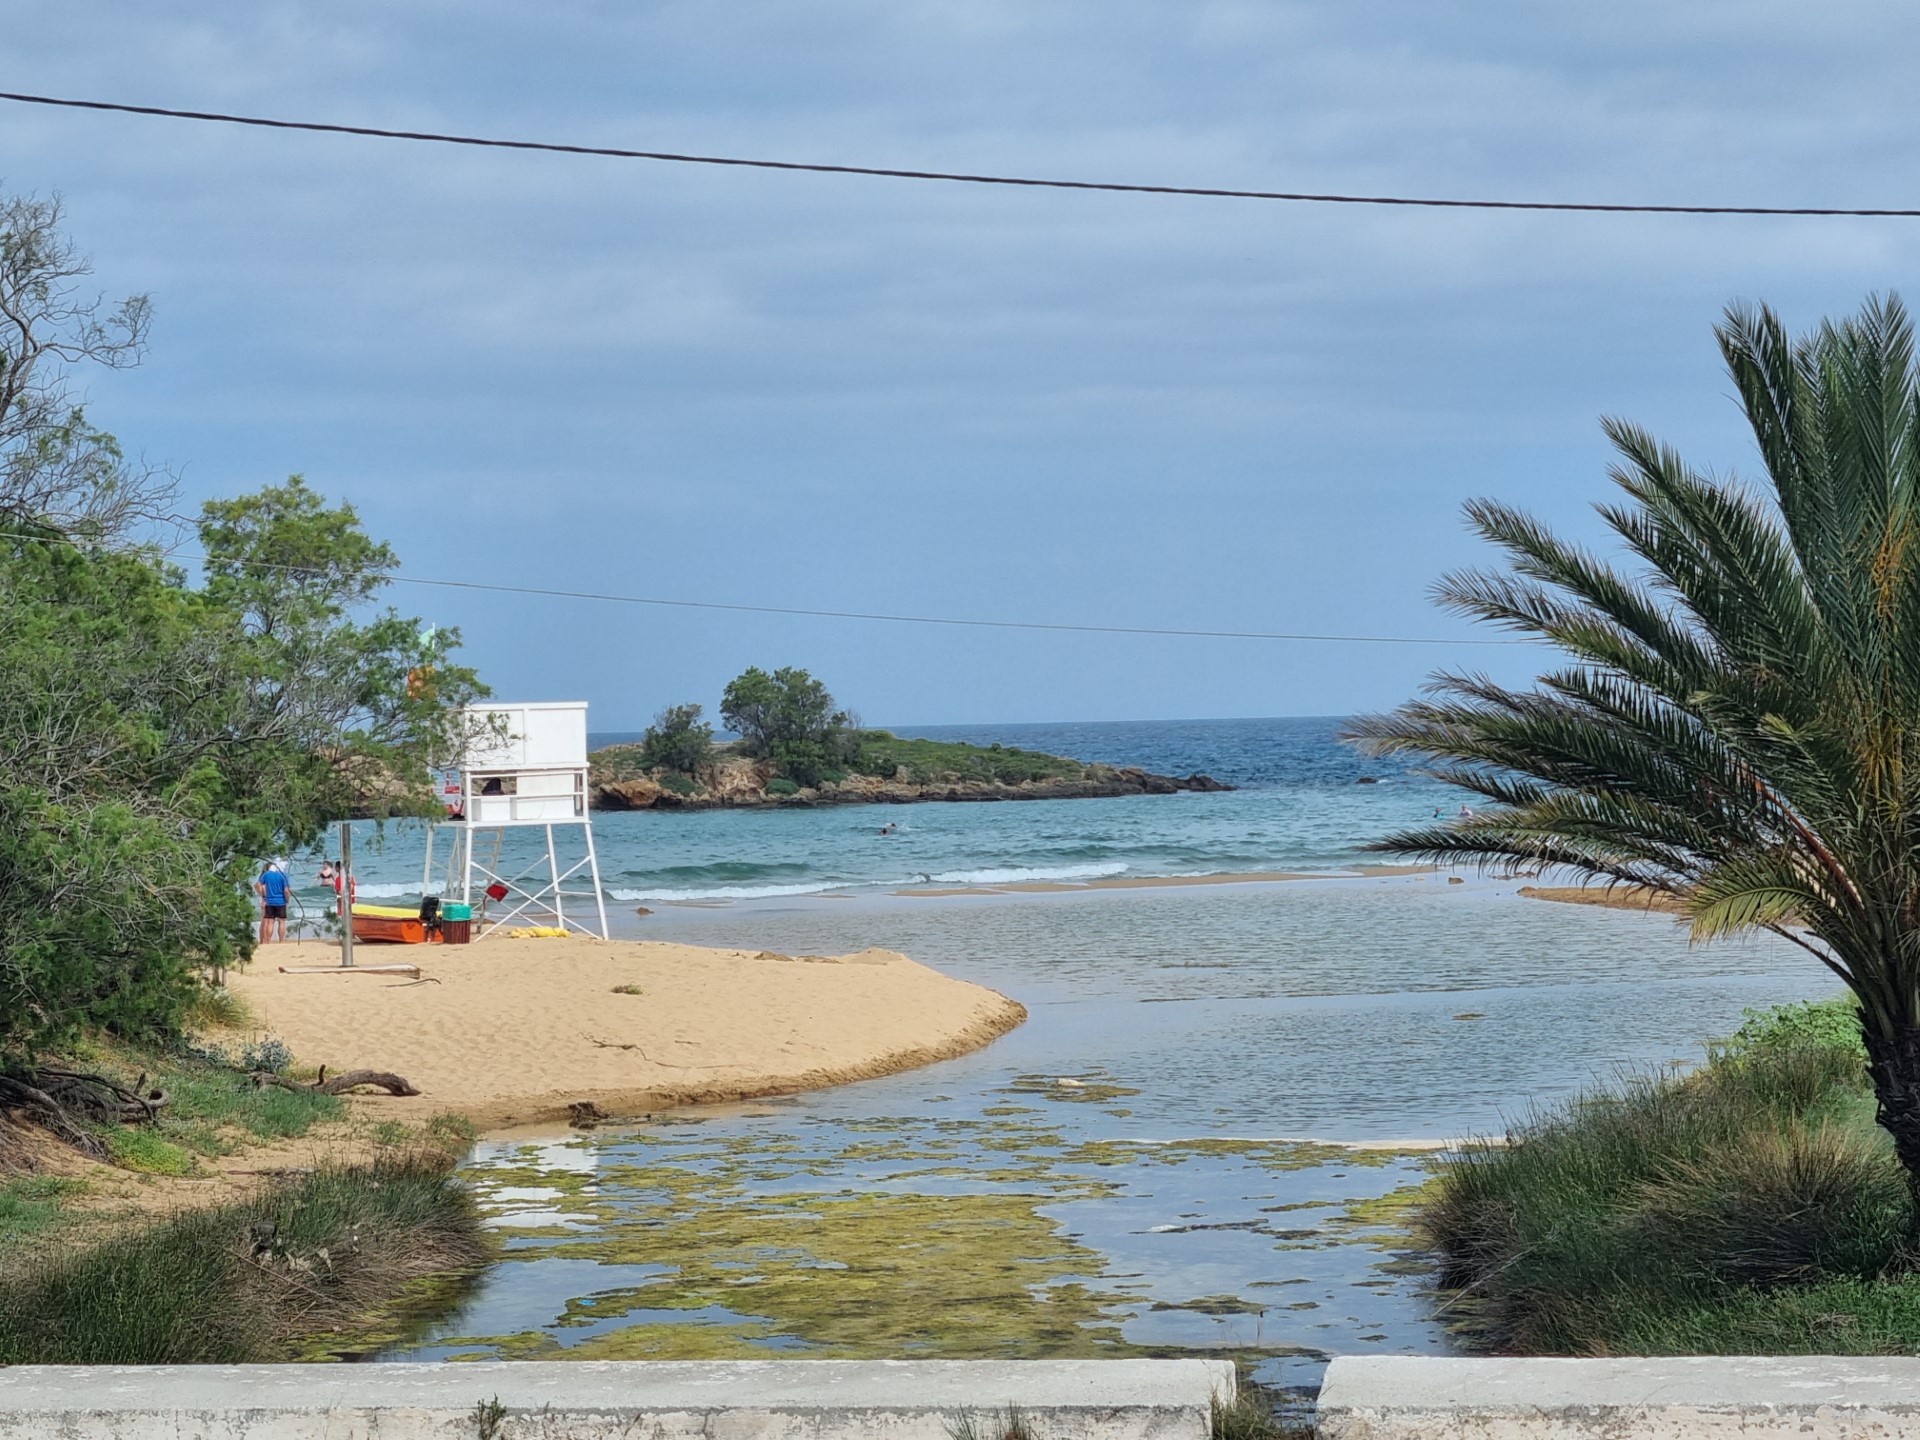 Παρέμβαση για την προστασία των αμμόλοφων και του υγρότοπου στην παραλία του Καλαθά στο Ακρωτήρι Χανίων